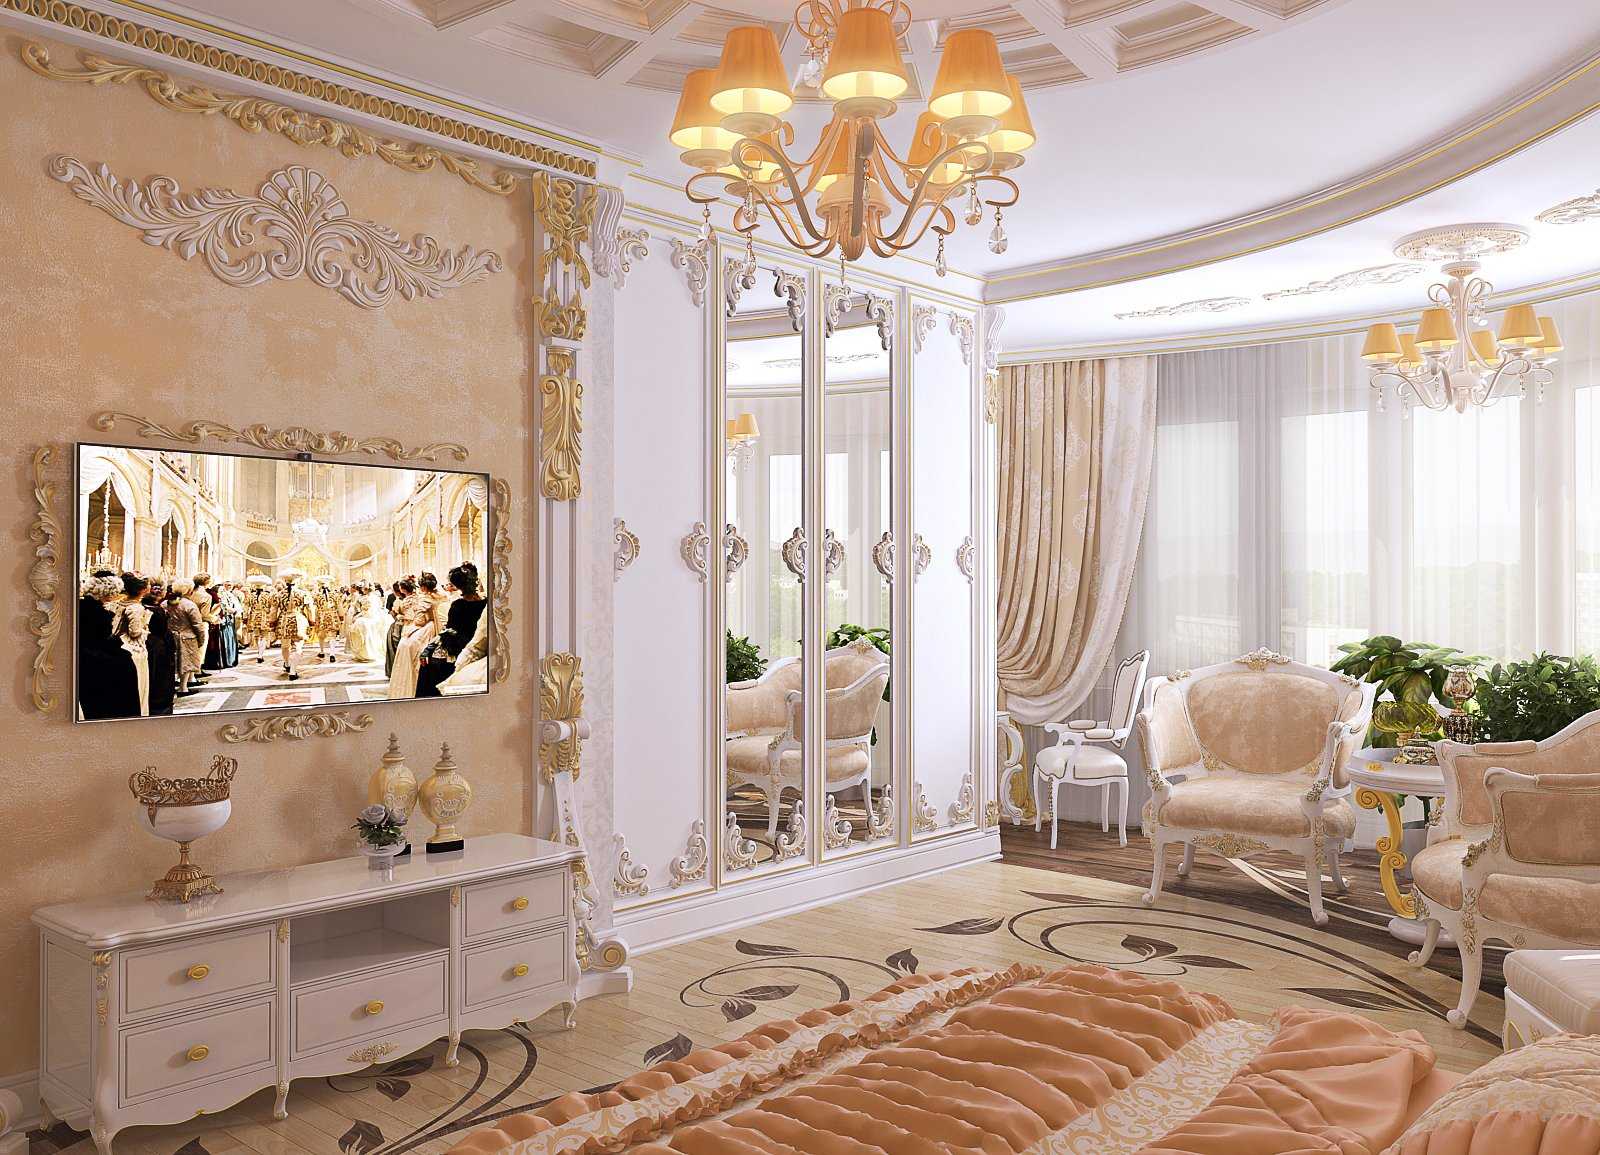 Стиль барокко в интерьере - идеи дизайна комнат в современной квартире, итальянский в том числе, картины и предметы декора + фото